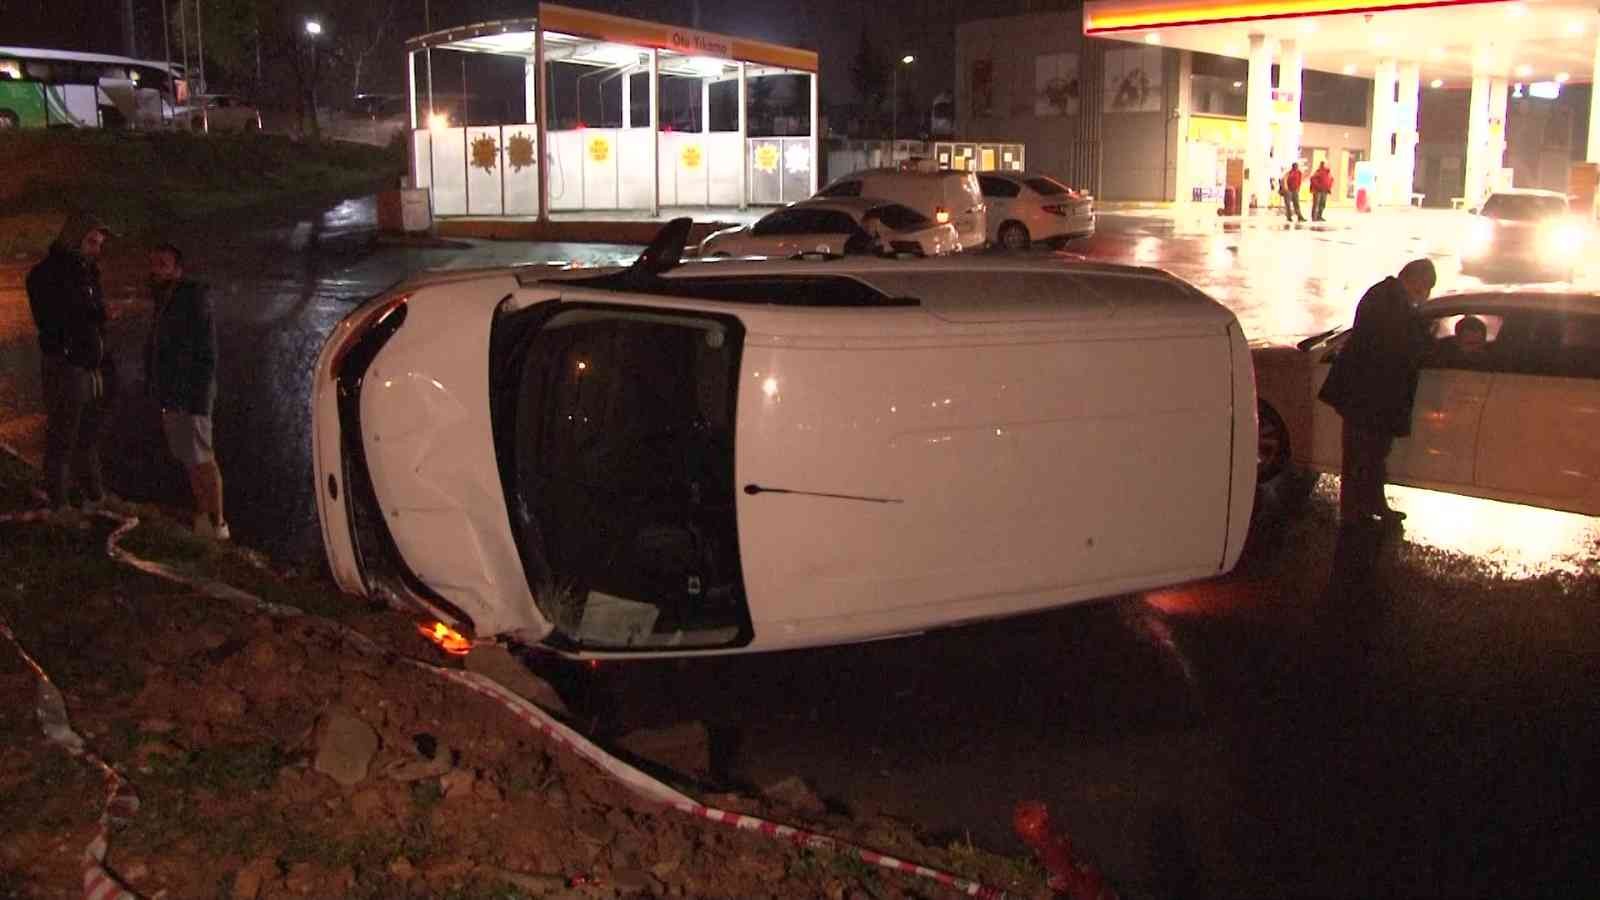 Pendik’te virajı alamayan araç refüje çıkıp takla attı: 1 yaralı #istanbul